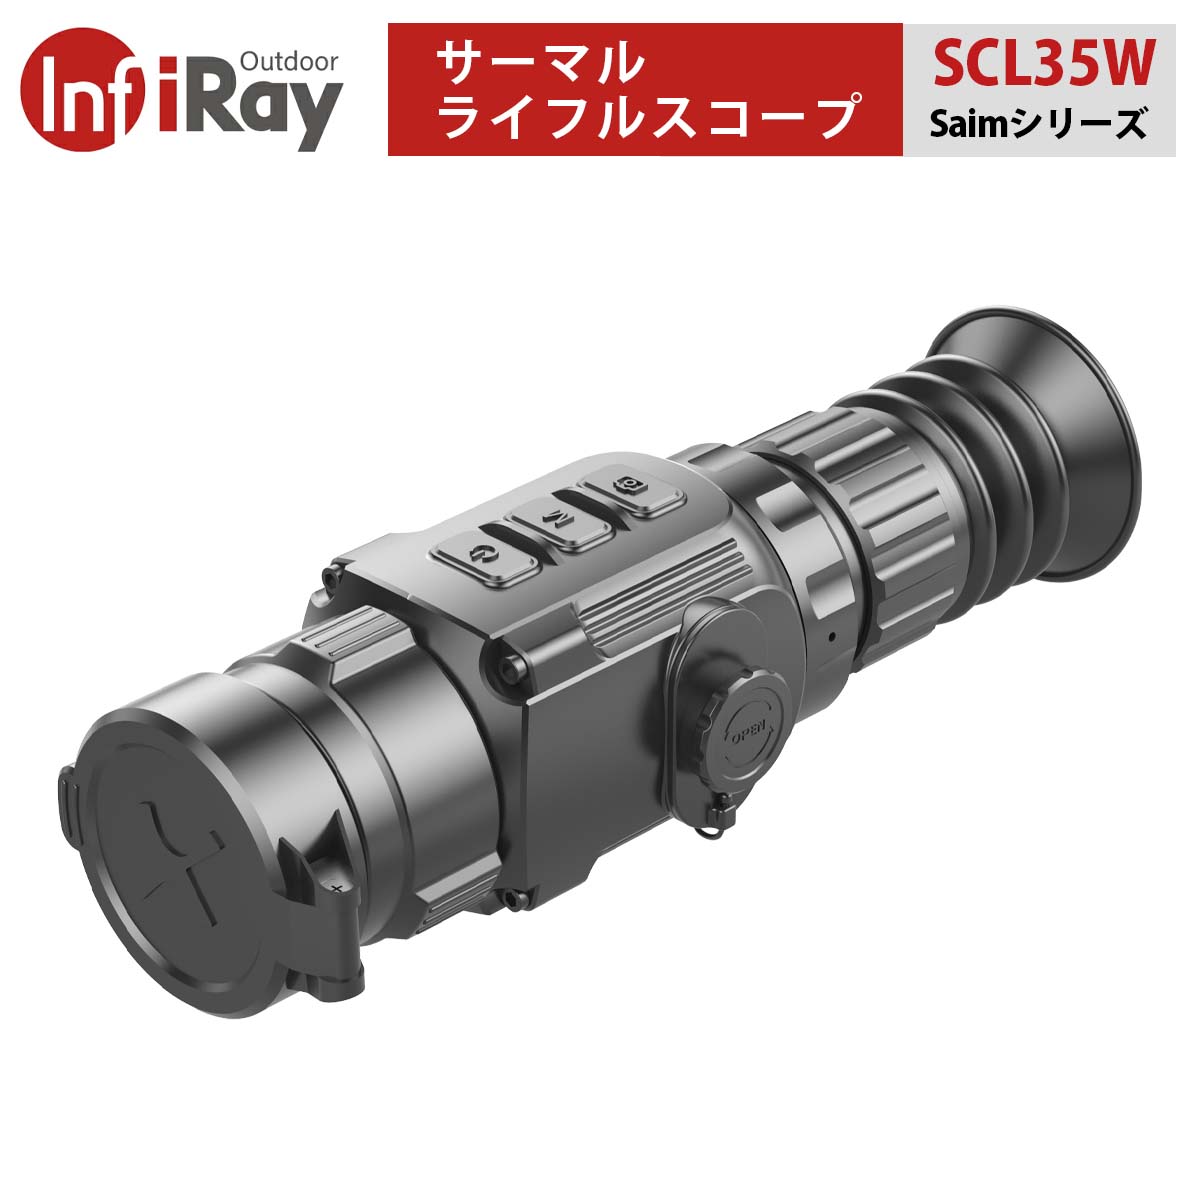 SCL35Wは、17μmセンサーと35mmレンズを採用するとともに、1280×960の高精細LCOSディスプレイを搭載。 Wi-Fi、写真撮影、録画機能にも対応しています。さらに、ユーザーの様々なハンティングニーズに対応するため、8種類のレティクルが用意されています。 【Saimシリーズ SCL35Wについて】 ■高画質・高音質 384ピクセル赤外線検出器とMatrixIIIアルゴリズムの採用により、高画質、高コントラスト、高階調を実現し、ターゲットの迅速な探索を可能にします。SCL35Wは、ピクセルピッチ17μmモジュール、35mmレンズ、1280×960のLCOSディスプレイを採用しています。 ■ウルトラクリアモード IRAYのユニークな機能「ウルトラクリアモード」は濃い霧や雨などの悪天候でも、スコープの感度を高め、より詳細な情報を得ることができます。 ■拡張バッテリーボックス SCL35Wは16650バッテリーを2本収納できる拡張バッテリーボックスを用意しています。このバッテリーボックスを使用することによって、SCL35Wの最大駆動時間を7時間まで延長できます。 ■内蔵ビデオレコーダーとWIFI接続機能 動画や画像を保存できる16GBのメモリを内蔵しています。またWifi機能を搭載しており、最大4台までのデバイスを同時に接続することができます。 ■シャープネス調整 画像のシャープネスを手動で調整し、高画質を実現することができます。 ■高い耐衝撃性 Saimシリーズは、最大1000Gの高い耐衝撃性を備えています。またリコイルは6000ジュールまで対応し、375H&amp;H、12ゲージ、9.3x64mm弾までの大口径に確実に対応します。 ■多彩なレチクル ユーザーの様々なハンティングニーズに応えるため、8種類のレチクルが用意されています。 ■ピクチャーインピクチャー機能 ピクチャー・イン・ピクチャーはレチクル部分を2倍に拡大し、ディスプレイの上部に表示することで正確さを向上させる機能です。これにより視界を確保しつつ、ターゲットを確実に捉えることができます。 モデル SCL35W 検出器解像度(ピクセル) 384x288 ピクセルサイズ(μm) 17 NETD(ノイズ等価温度差)(mK) &le;40 フレームレート(Hz) 50 対物レンズ(mm) 35 視野角 10.7°×8.0° 視度調整(D） -5D～+5 ディスプレイ解像度(ピクセル) 1280×960 LCOS 光学倍率 2.02× デジタルズーム 1×/2×/3×/4× WiFi ＆ Recorder あり 内臓メモリ(GB) 16 電源 CR123×2/16650バッテリ×2（拡張バッテリボックス） 最大稼働時間(時間) 3.5/7.0 検出可能距離(m)目標サイズ 1.7m x 0.5m, P(n)=99% 1283 動作温度（℃） -10～+50 重量（g）バッテリーを含まず ＜420 寸法（mm） 195×61×61 1年無償保証永久修理保証初期不良の即交換対応万が一の故障でもご安心ください。サーマルライフルスコープ Saimシリーズ【iRay SCL35W】（正規輸入品）｜高画質 高音質 ウルトラクリアモード 拡張バッテリー 内蔵ビデオレコーダー WIFI接続 シャープネス調整 耐衝撃性 多彩なレチクル ピクチャーインピクチャー機能